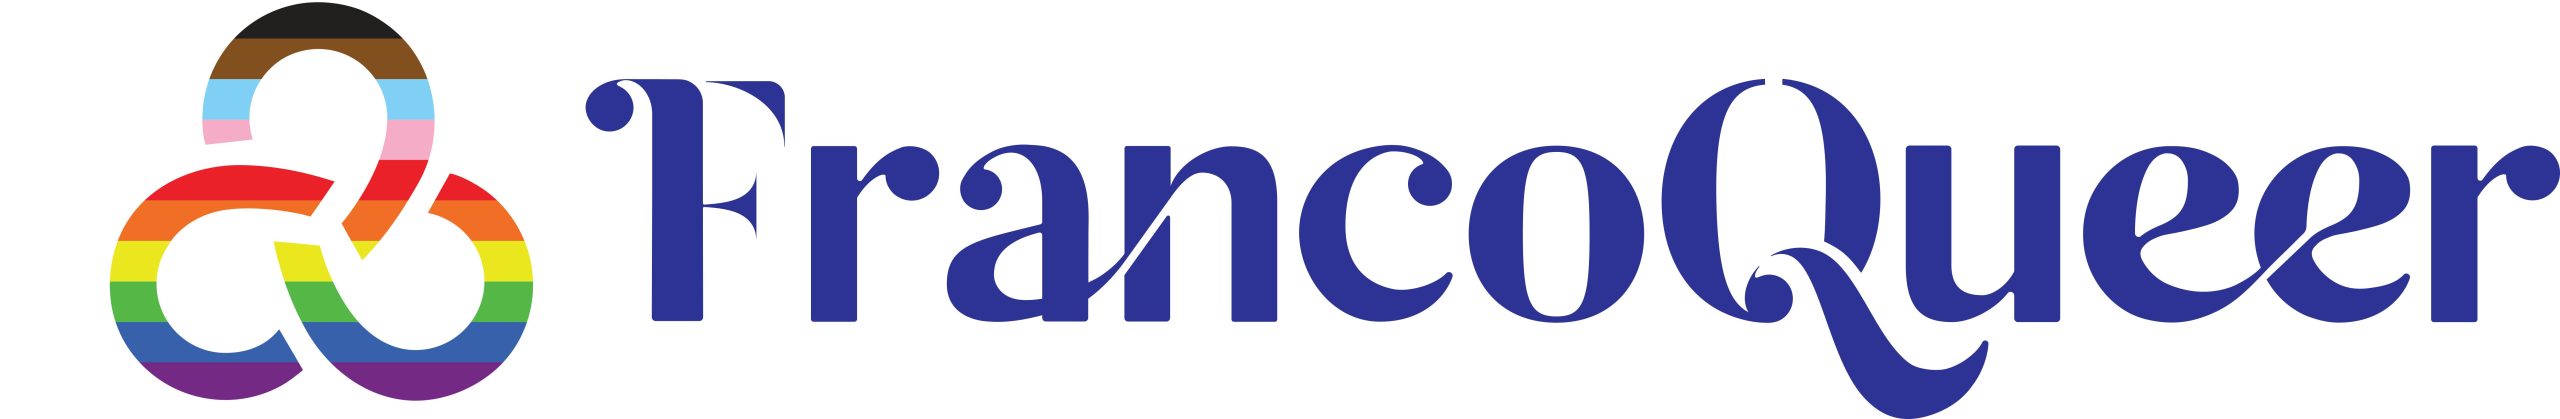 FranoQueer logo